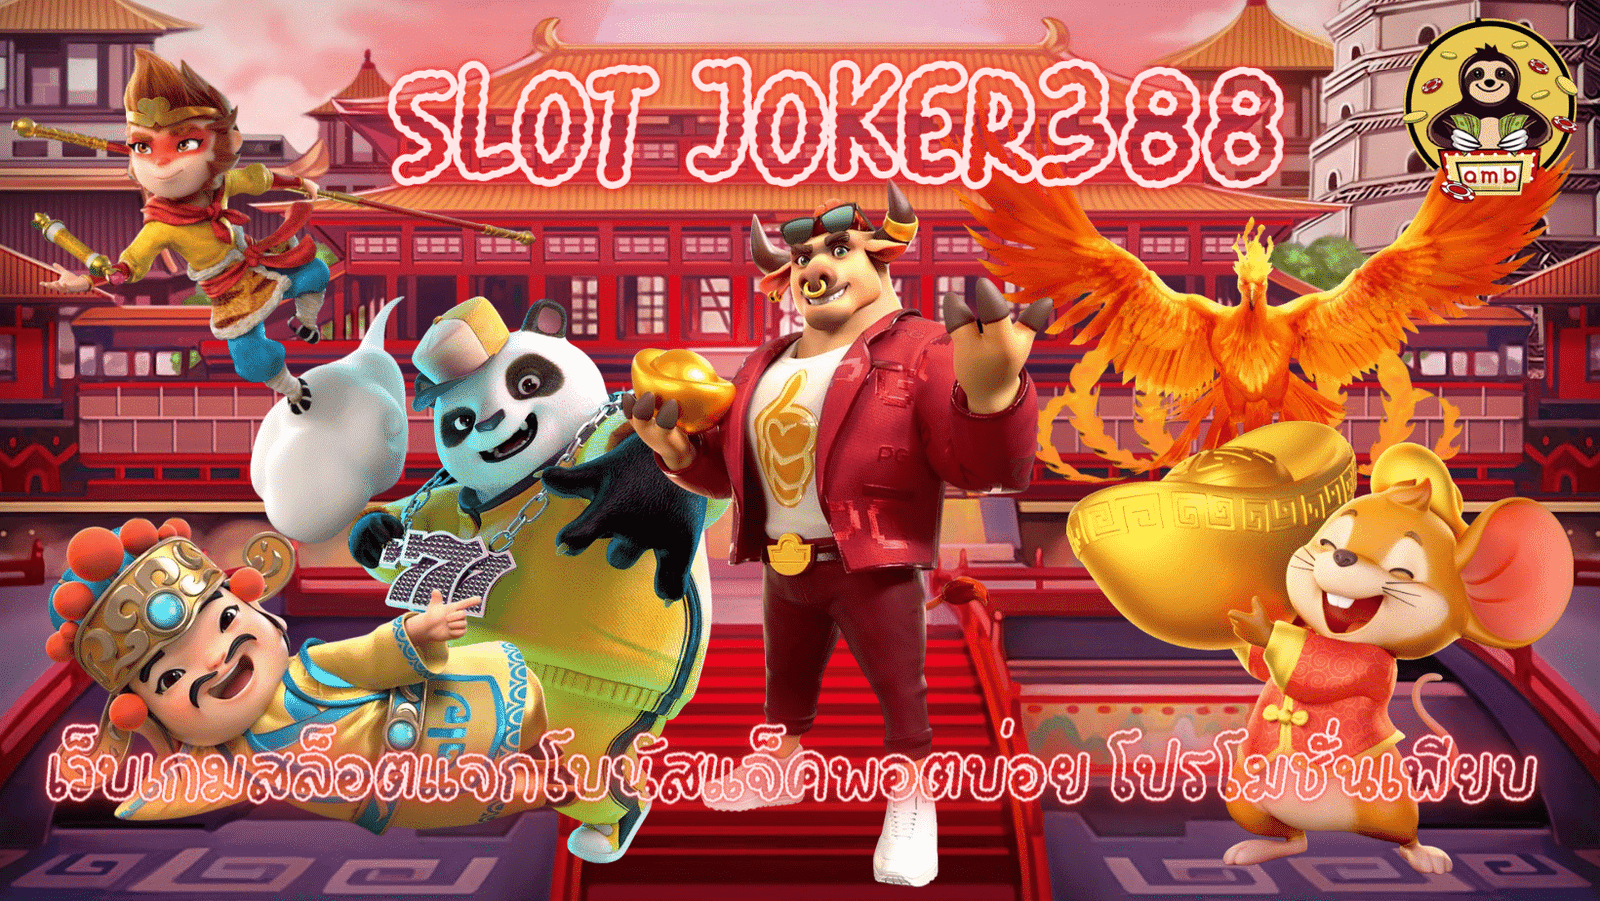 Slot-joker388-แจกโบนัสบ่อย